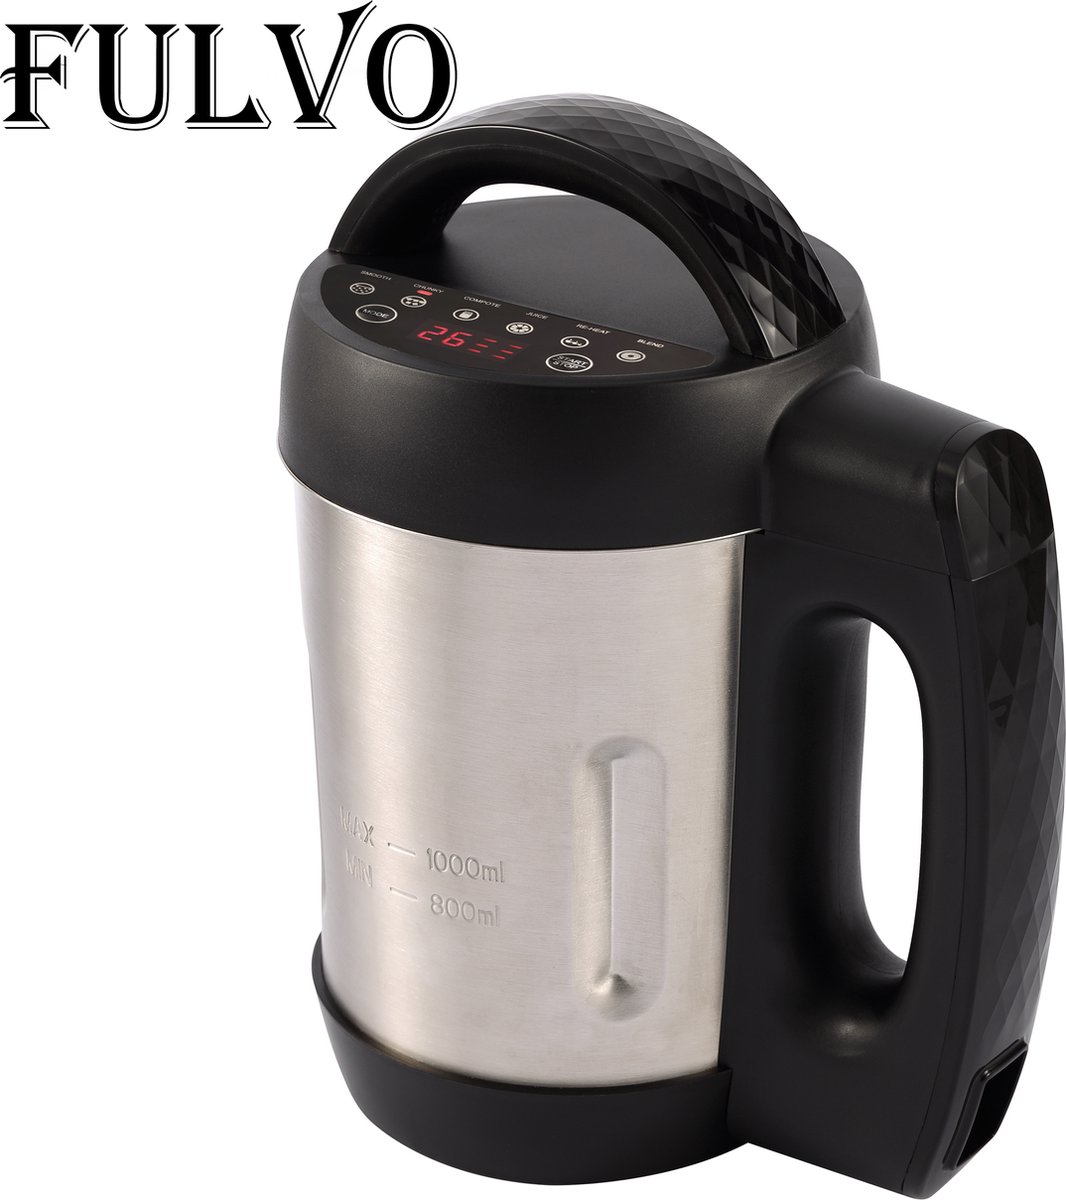 FULVO Soup maker - Blender - Smoothie maker - Faites votre propre soupe